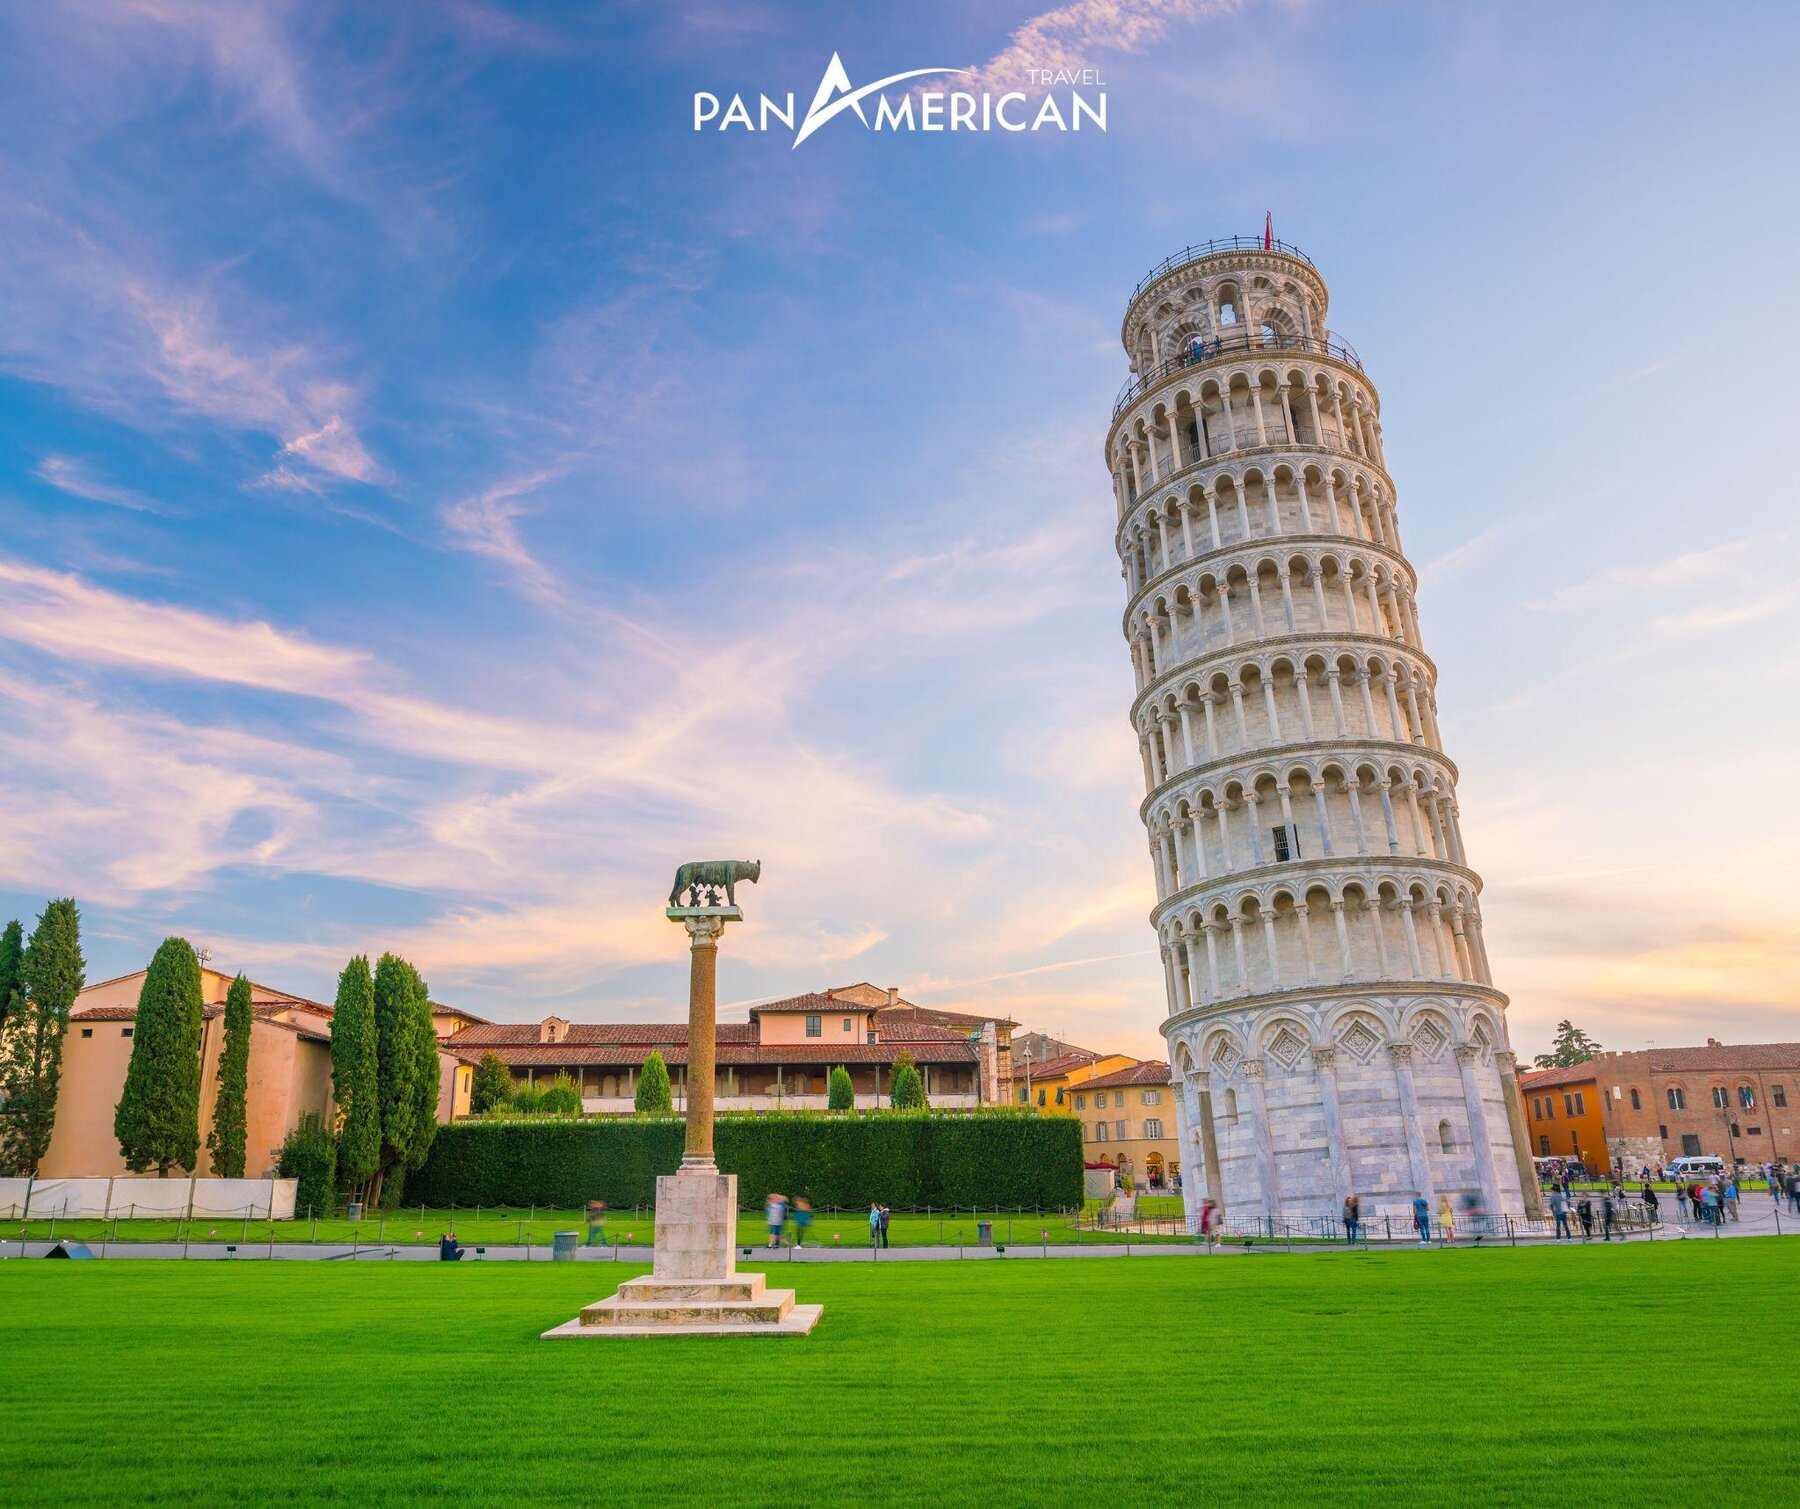 Tháp nghiêng Pisa mất gần 200 năm xây dựng